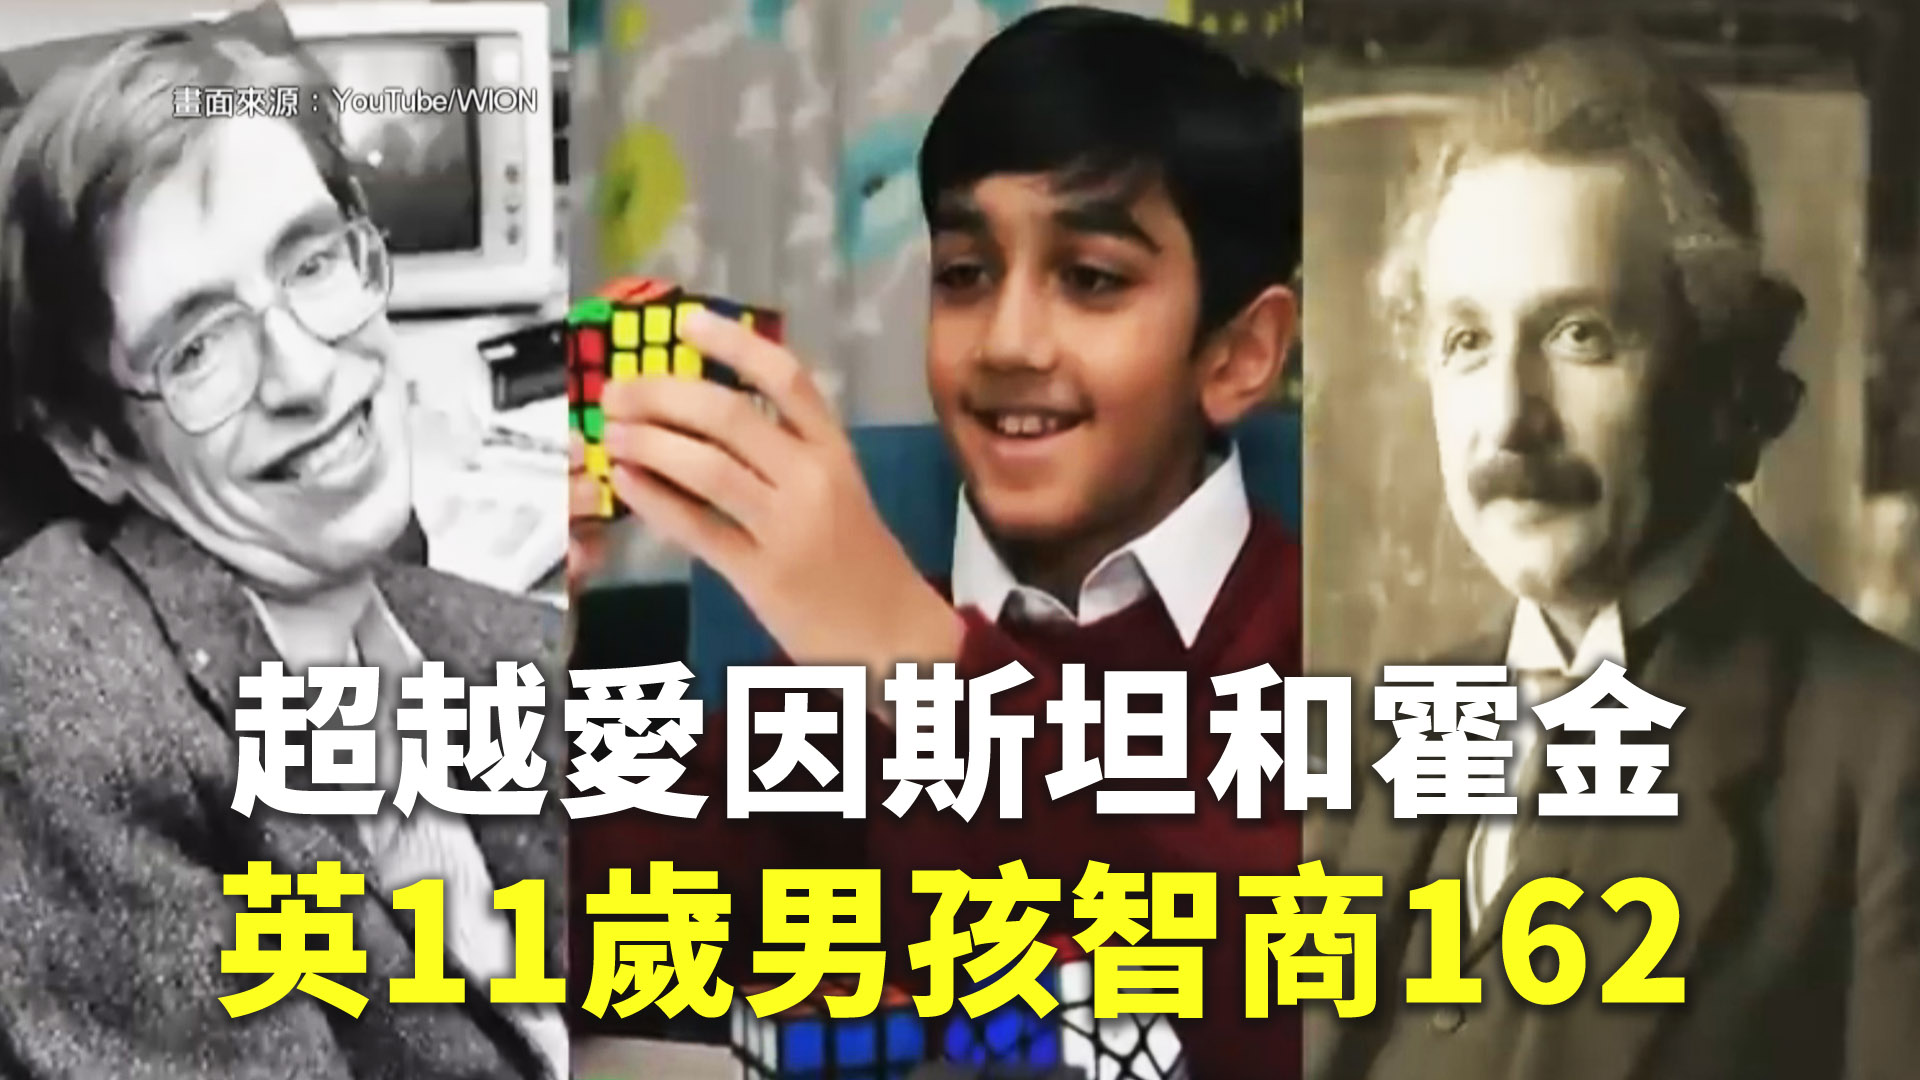 超越愛因斯坦和霍金英11歲男孩智商162 - 新唐人亞太電視台